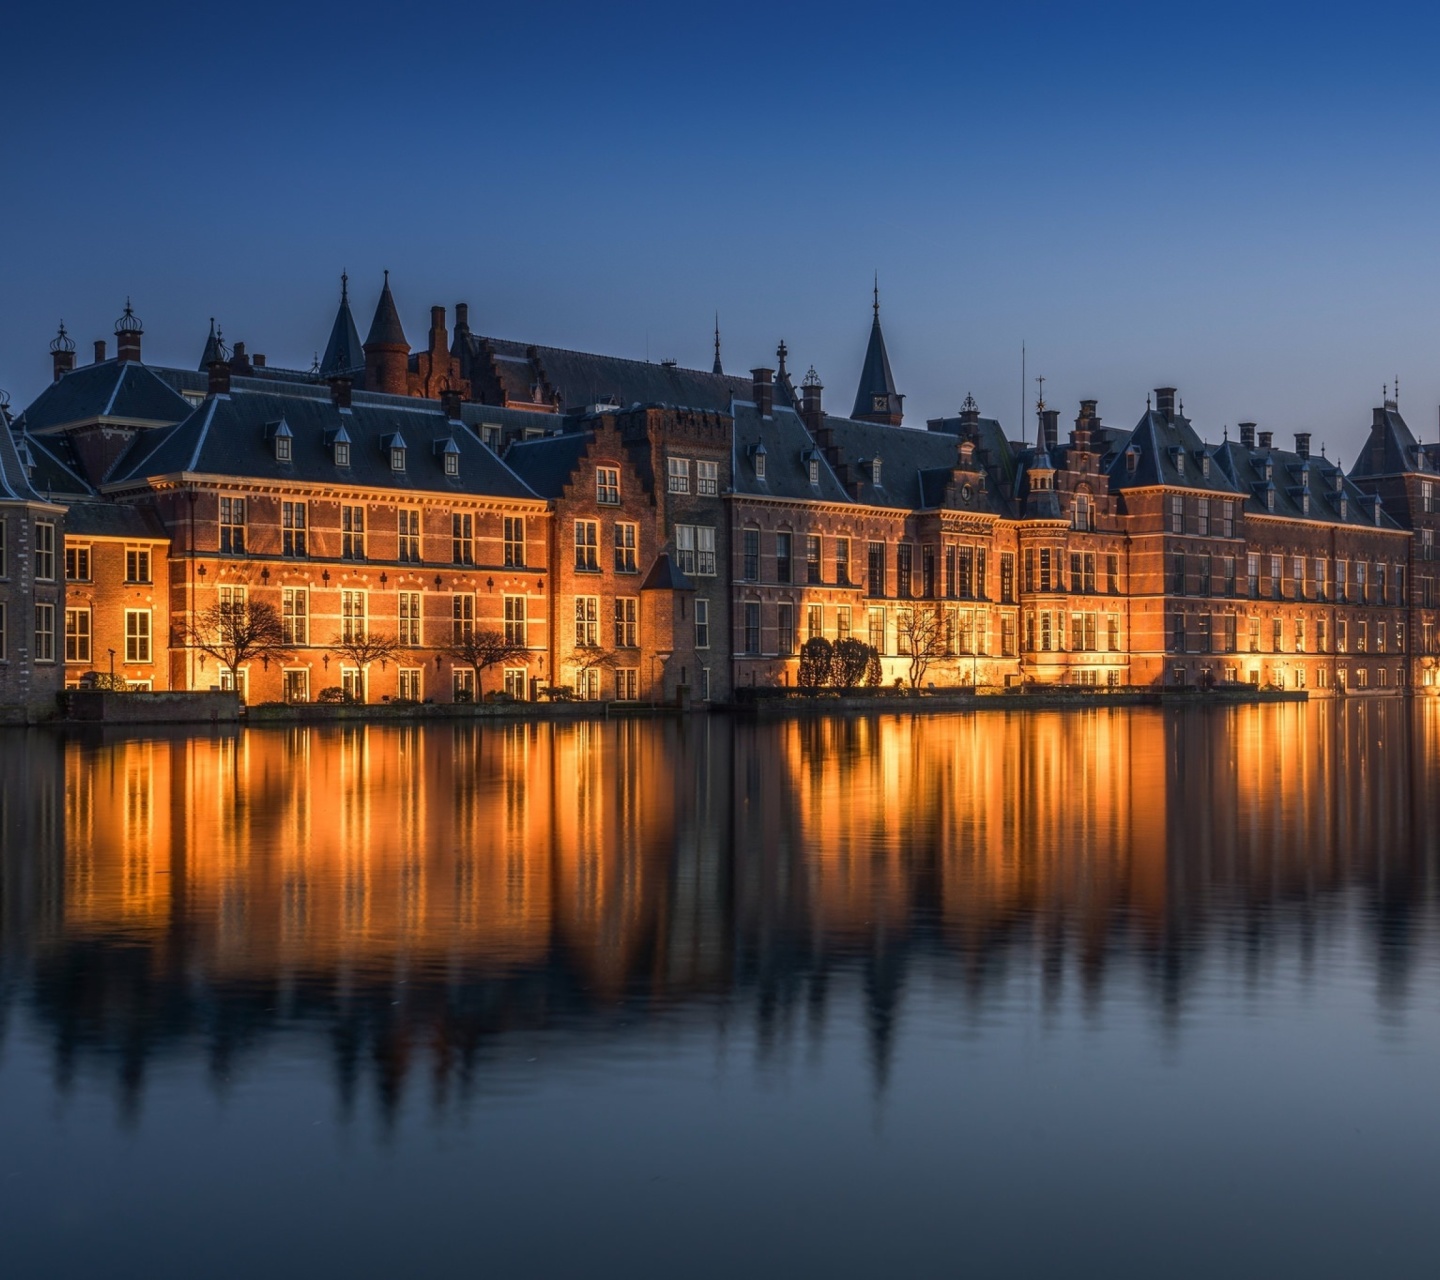 Binnenhof in Hague screenshot #1 1440x1280